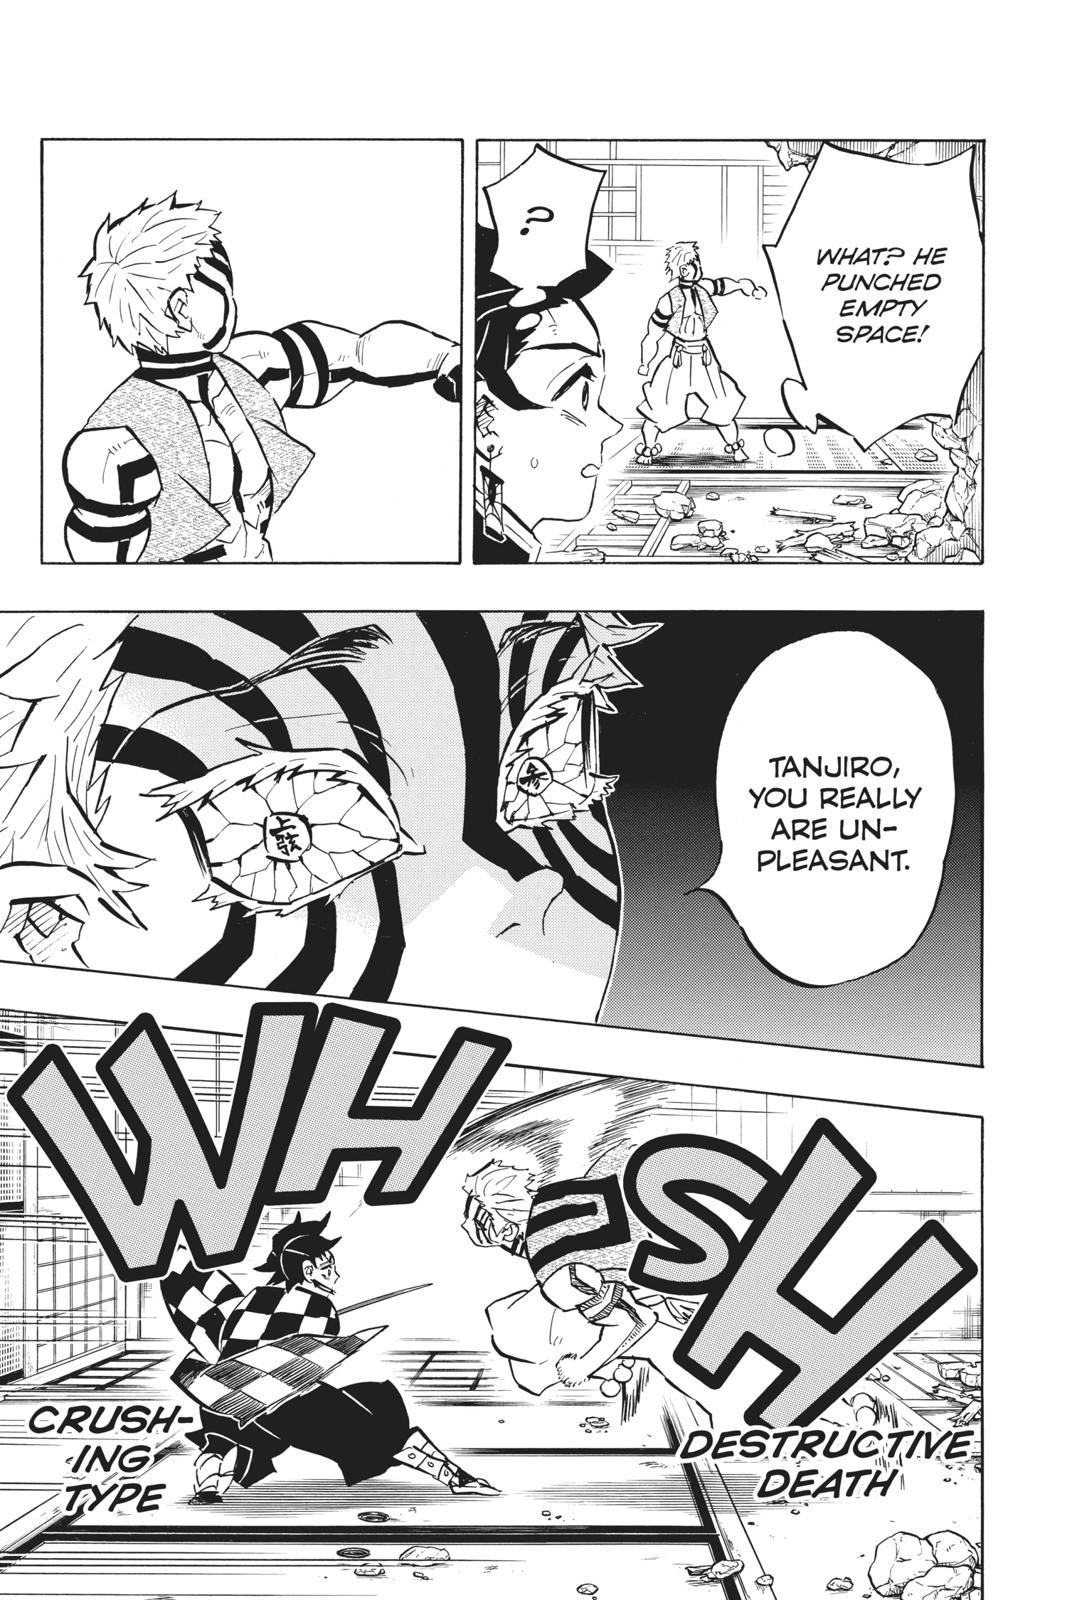 Demon Slayer Manga Manga Chapter - 149 - image 4